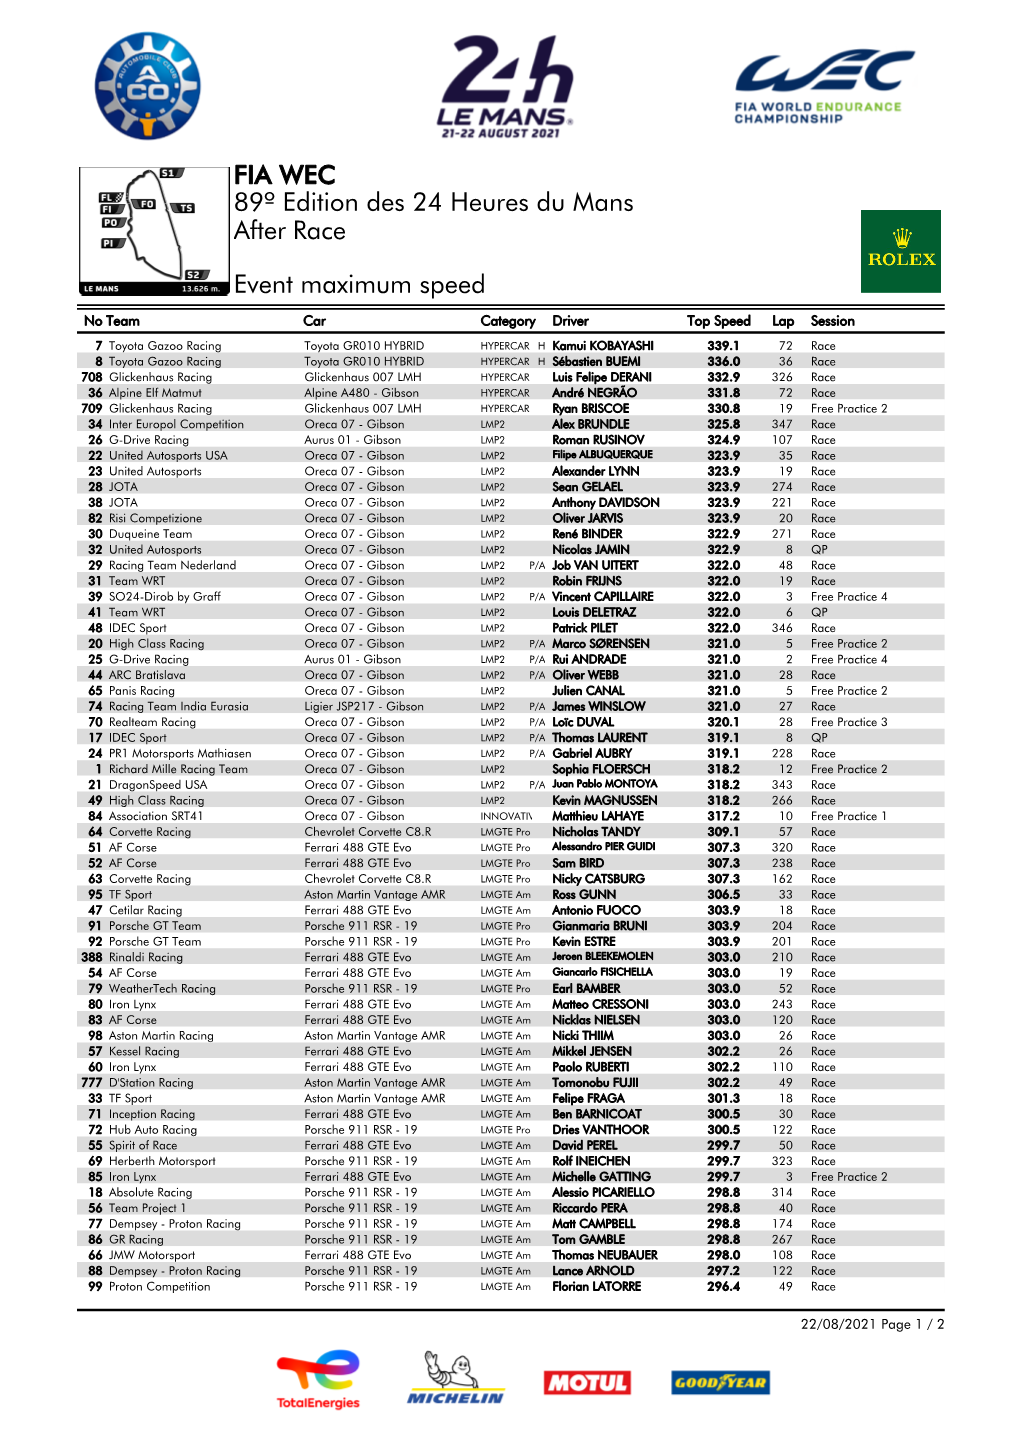 Event Maximum Speed Race 89º Edition Des 24 Heures Du Mans FIA